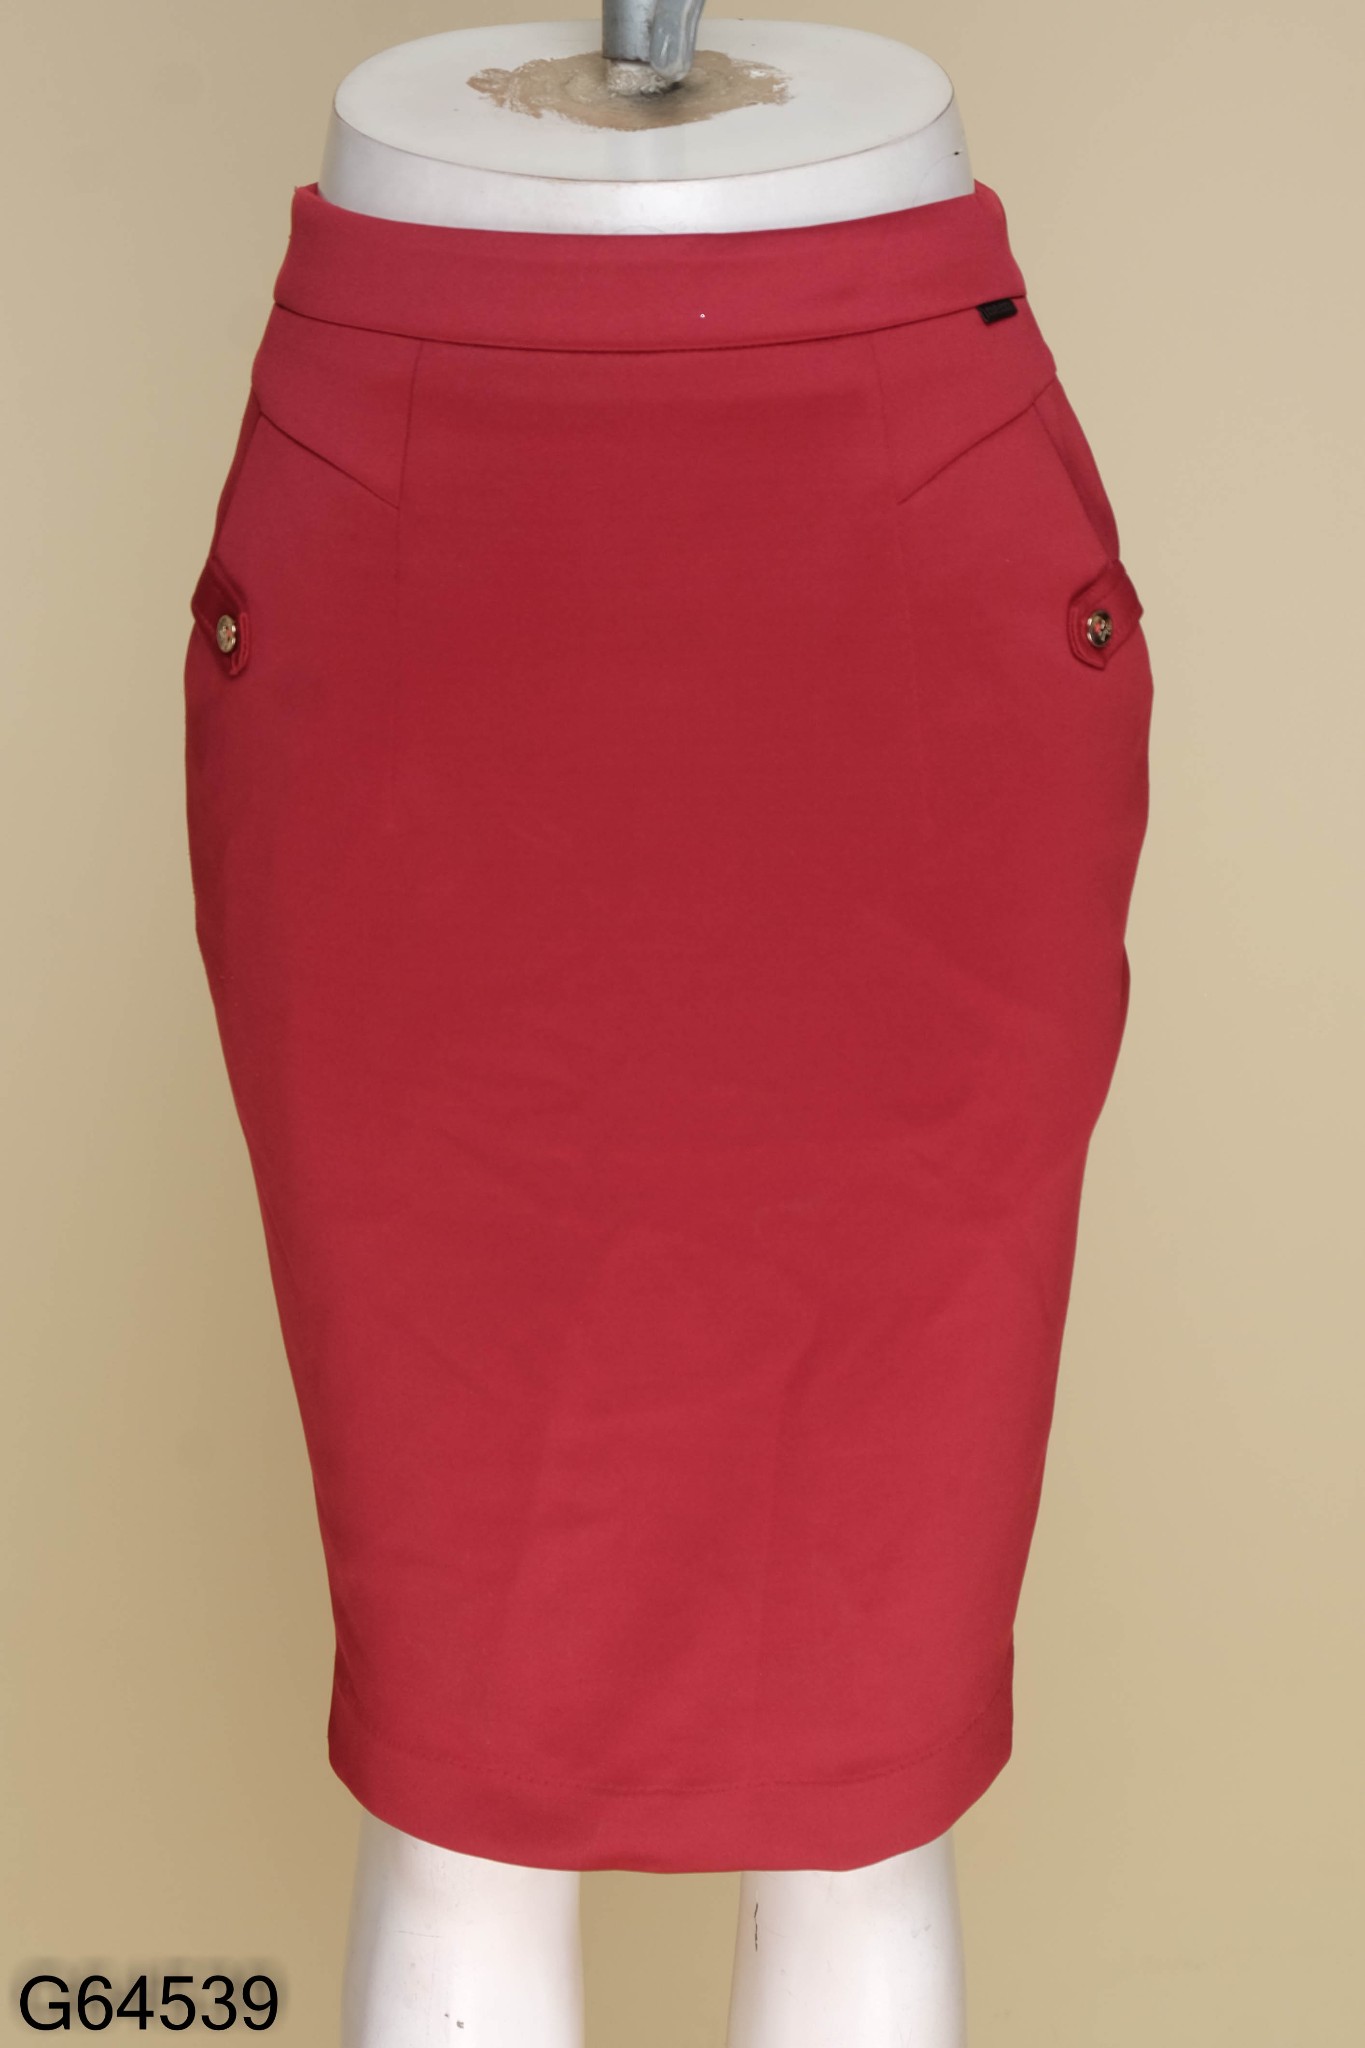 BELY | CV731 - Chân váy dáng A ngắn thiết kế vạt lệch - Đỏ mận, Xanh ghi -  Bely | Thời trang cao cấp Bely